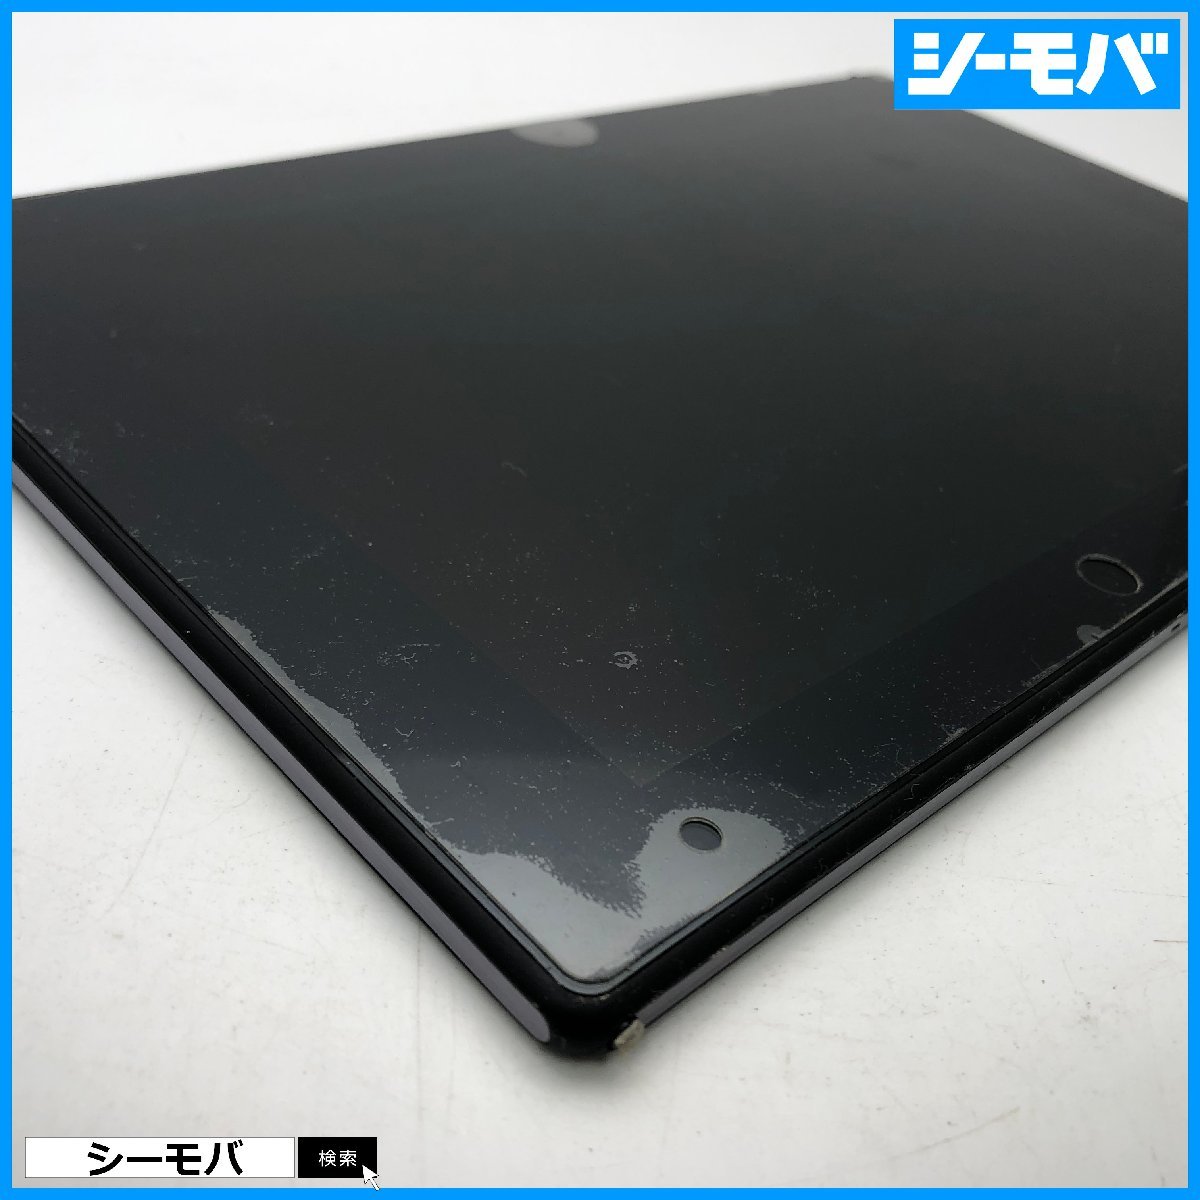 【ジャンク通電リセット済】au Xperia Z2 Tablet SOT21エクスペリア タブレット android アンドロイド 画面割れ 本体破損 RUUN13776の画像4